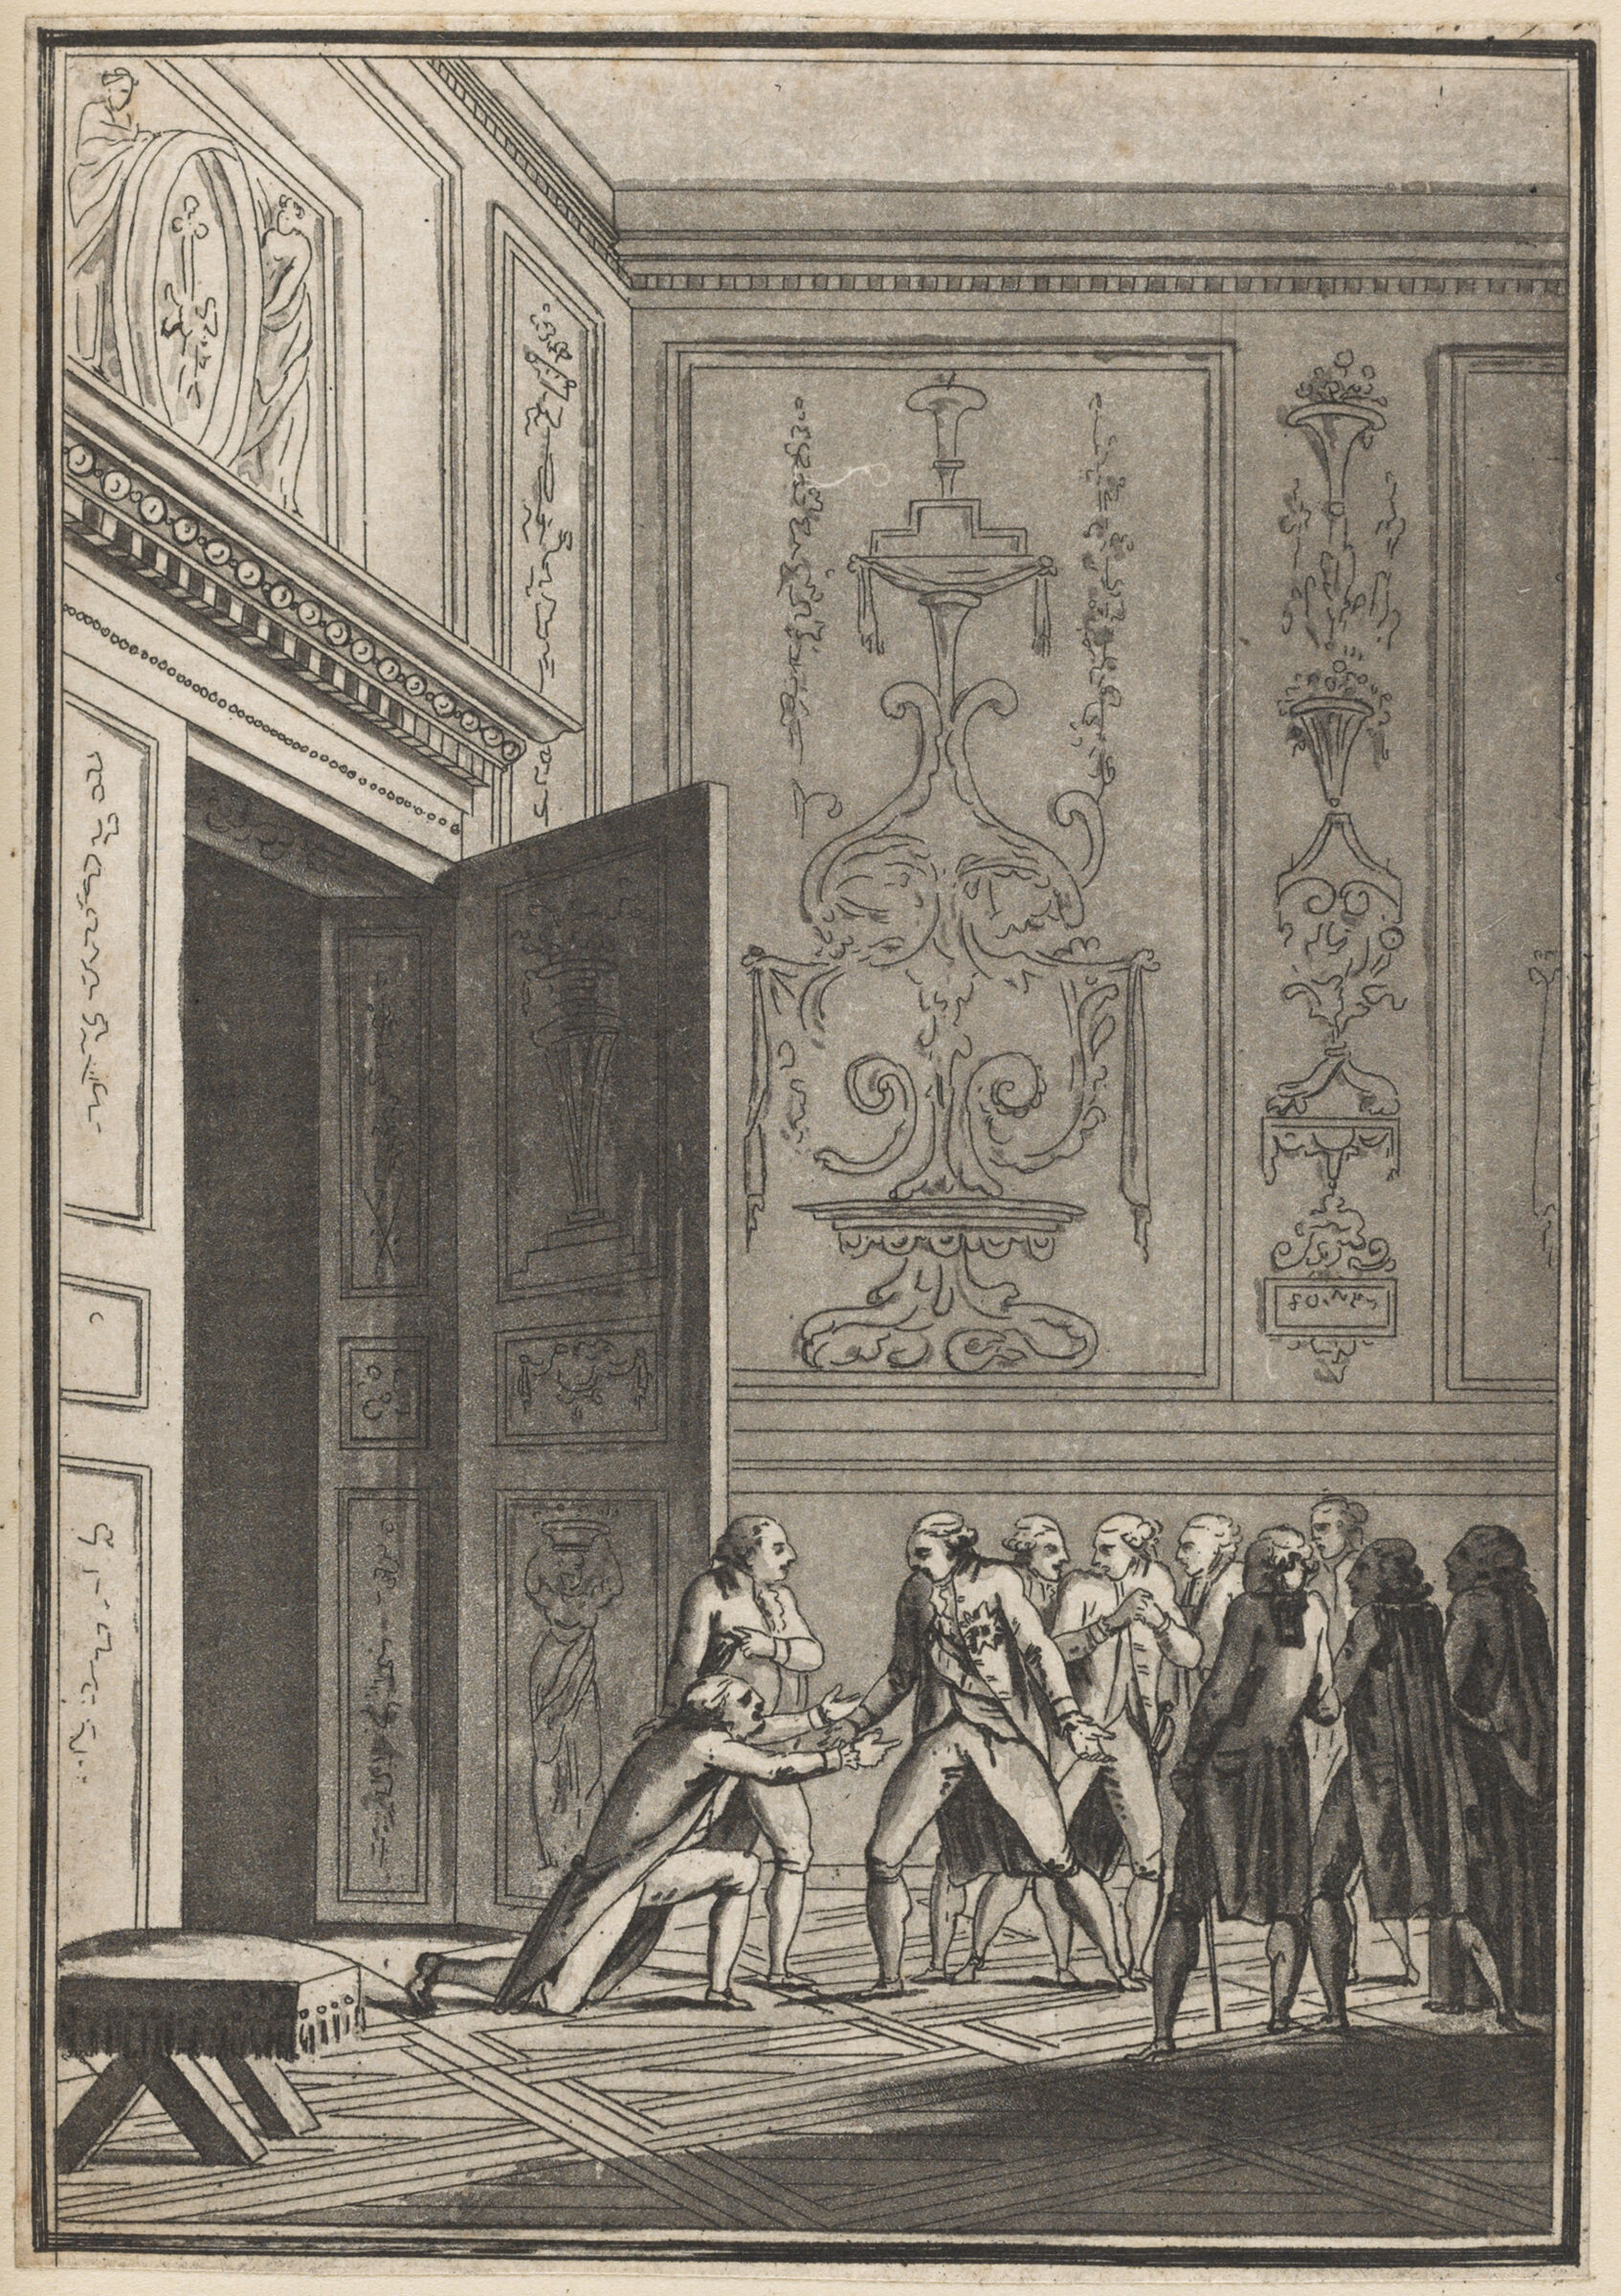 The Duc De Liancourt Tells Louis Xvi Of The Troubles In Paris (14-15 July 1789)